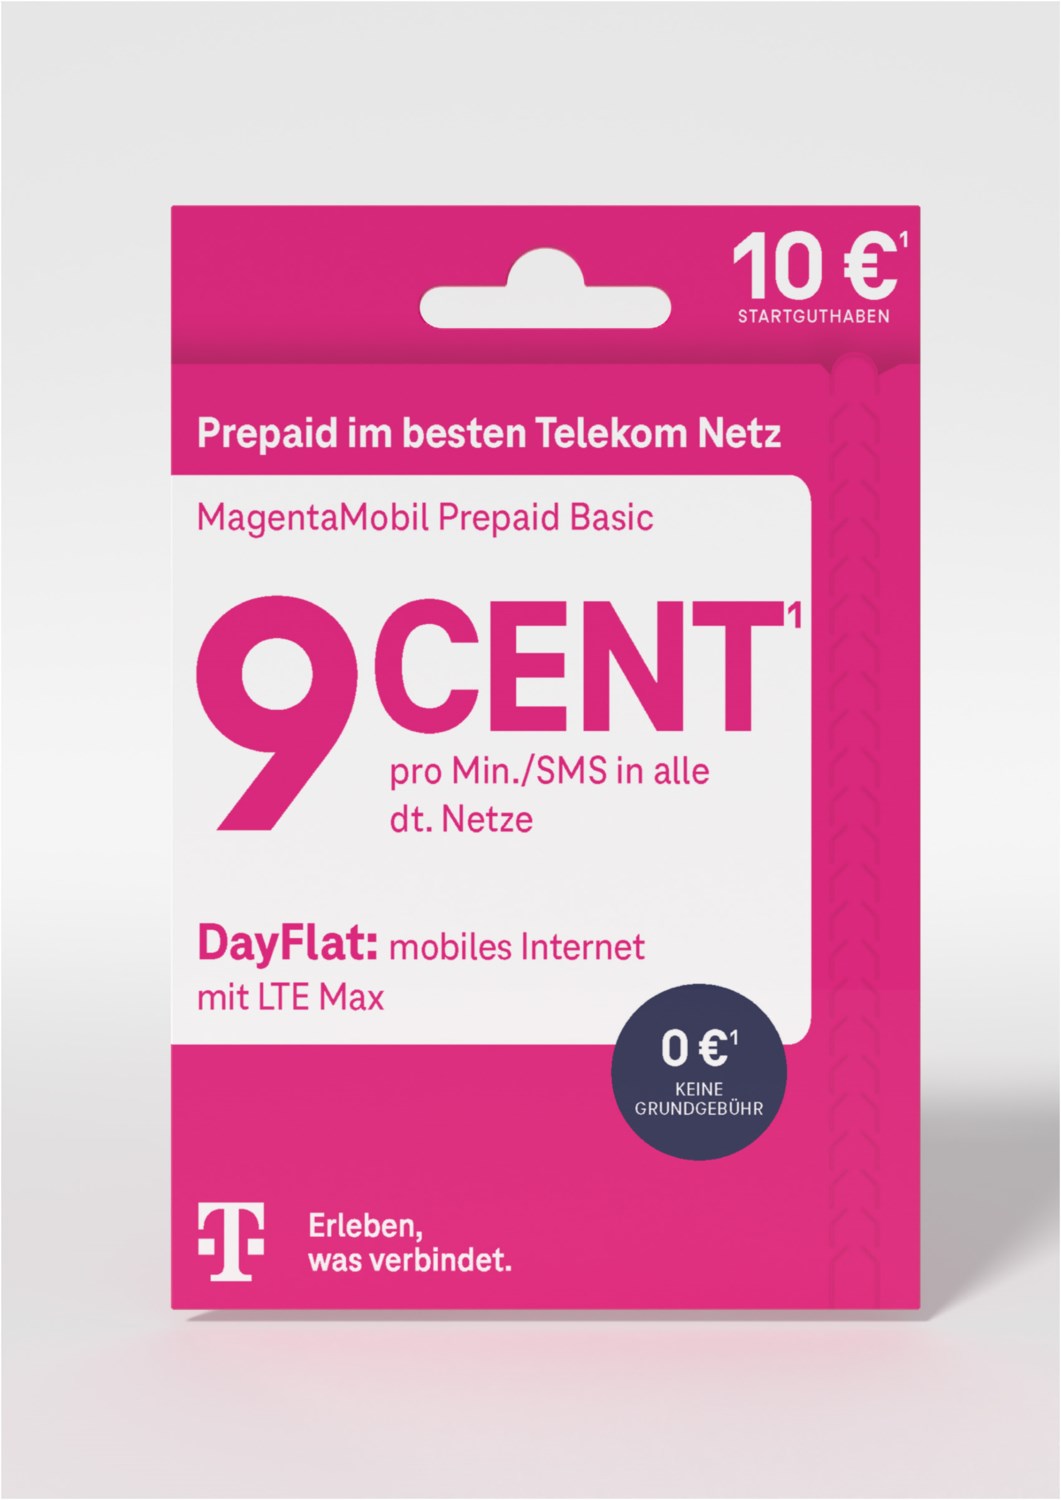 telekom magenta mobil prepaid basic